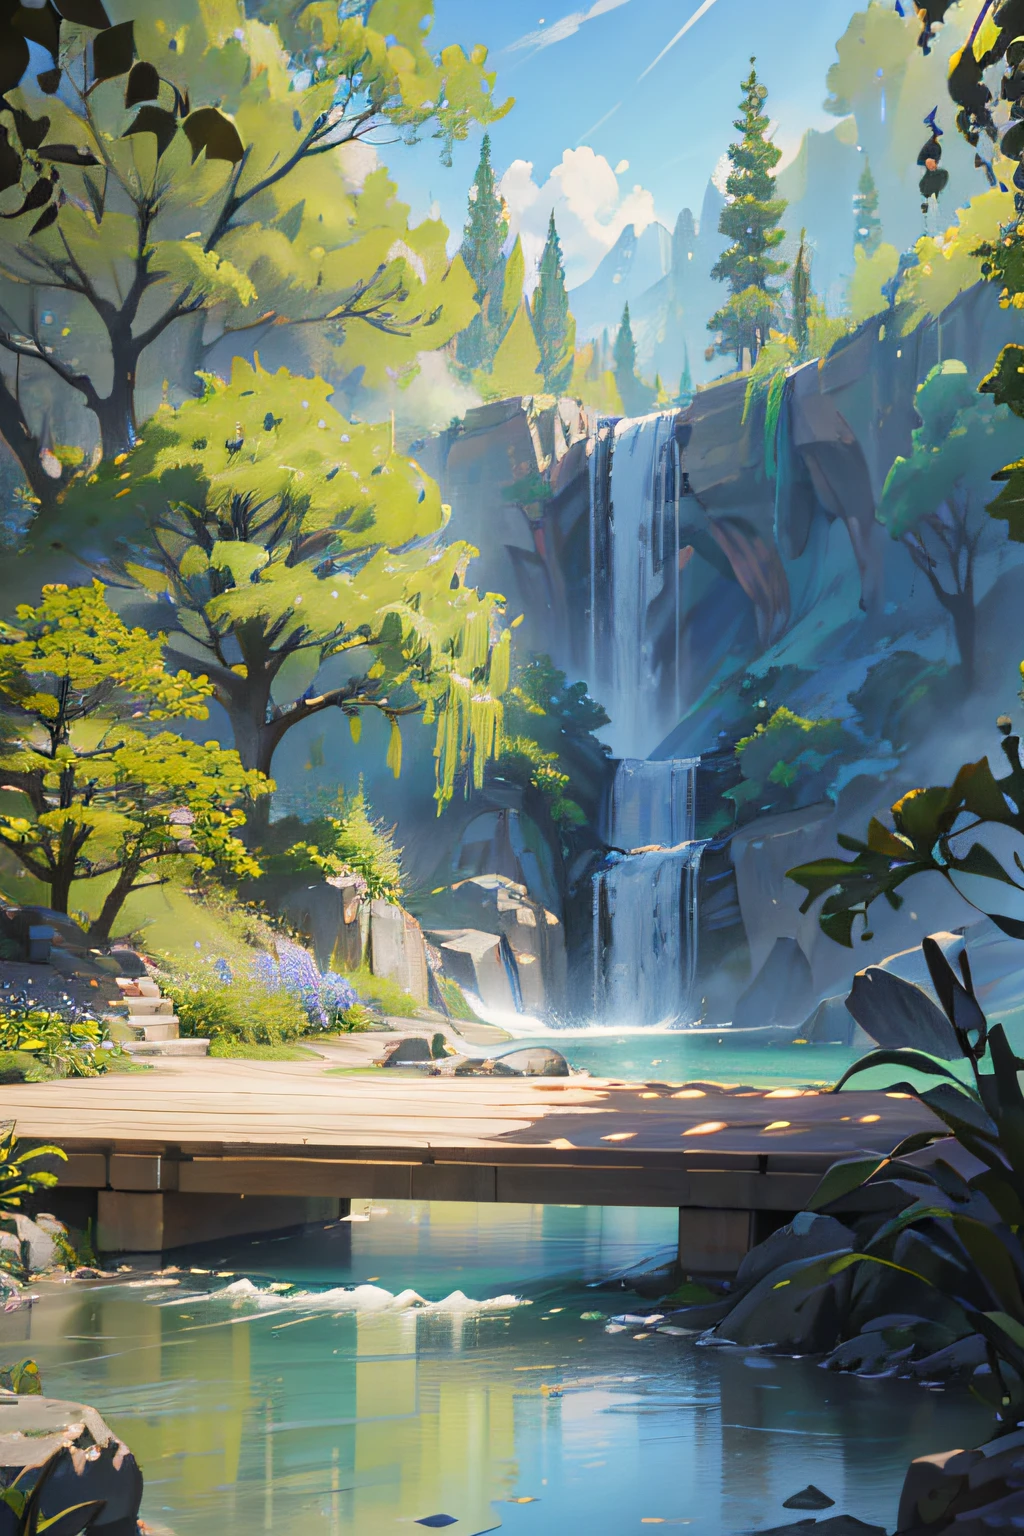 Ein unglaublich detailliertes und fotorealistisches CG Unity 8K-Hintergrundbild, die Schönheit eines klassischen chinesischen Gartens, Die atemberaubende Landschaft bietet einen ruhigen See und Fluss, umgeben von üppiger Vegetation und majestätischen Bäumen, natürliches Licht, blauer Himmel, flauschige Wolken, waterfall, Bokeh, Tiefenschärfe, HDR, blühen, Chromatische Abweichung, und komplizierte Details